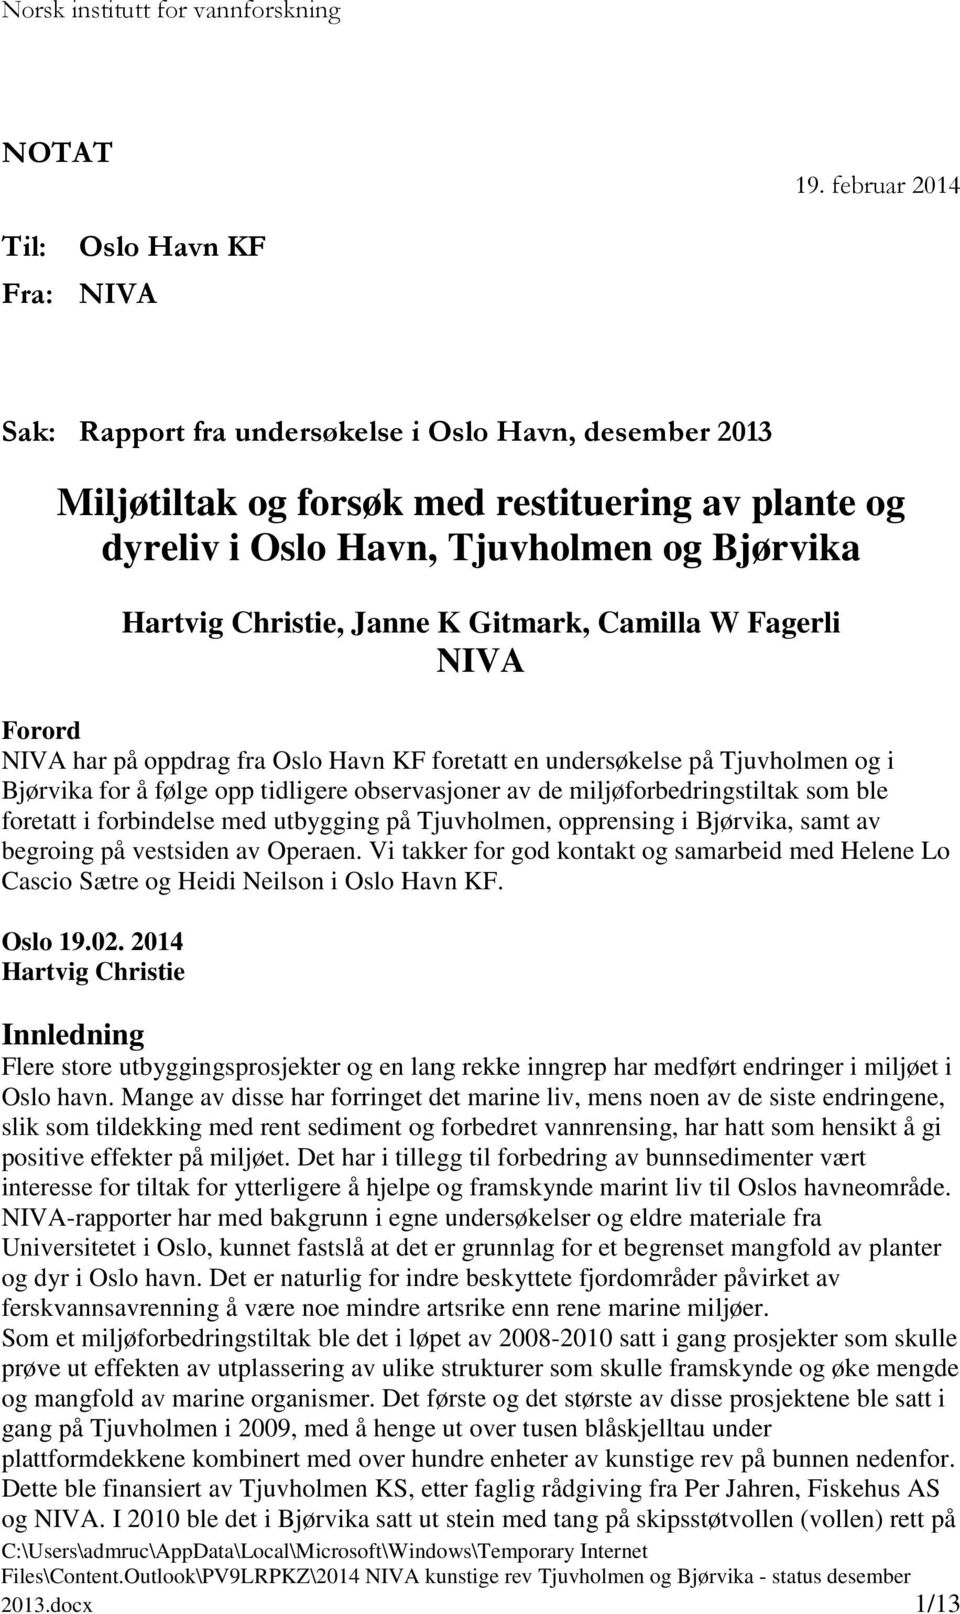 Hartvig Christie, Janne K Gitmark, Camilla W Fagerli NIVA Forord NIVA har på oppdrag fra Oslo Havn KF foretatt en undersøkelse på Tjuvholmen og i Bjørvika for å følge opp tidligere observasjoner av